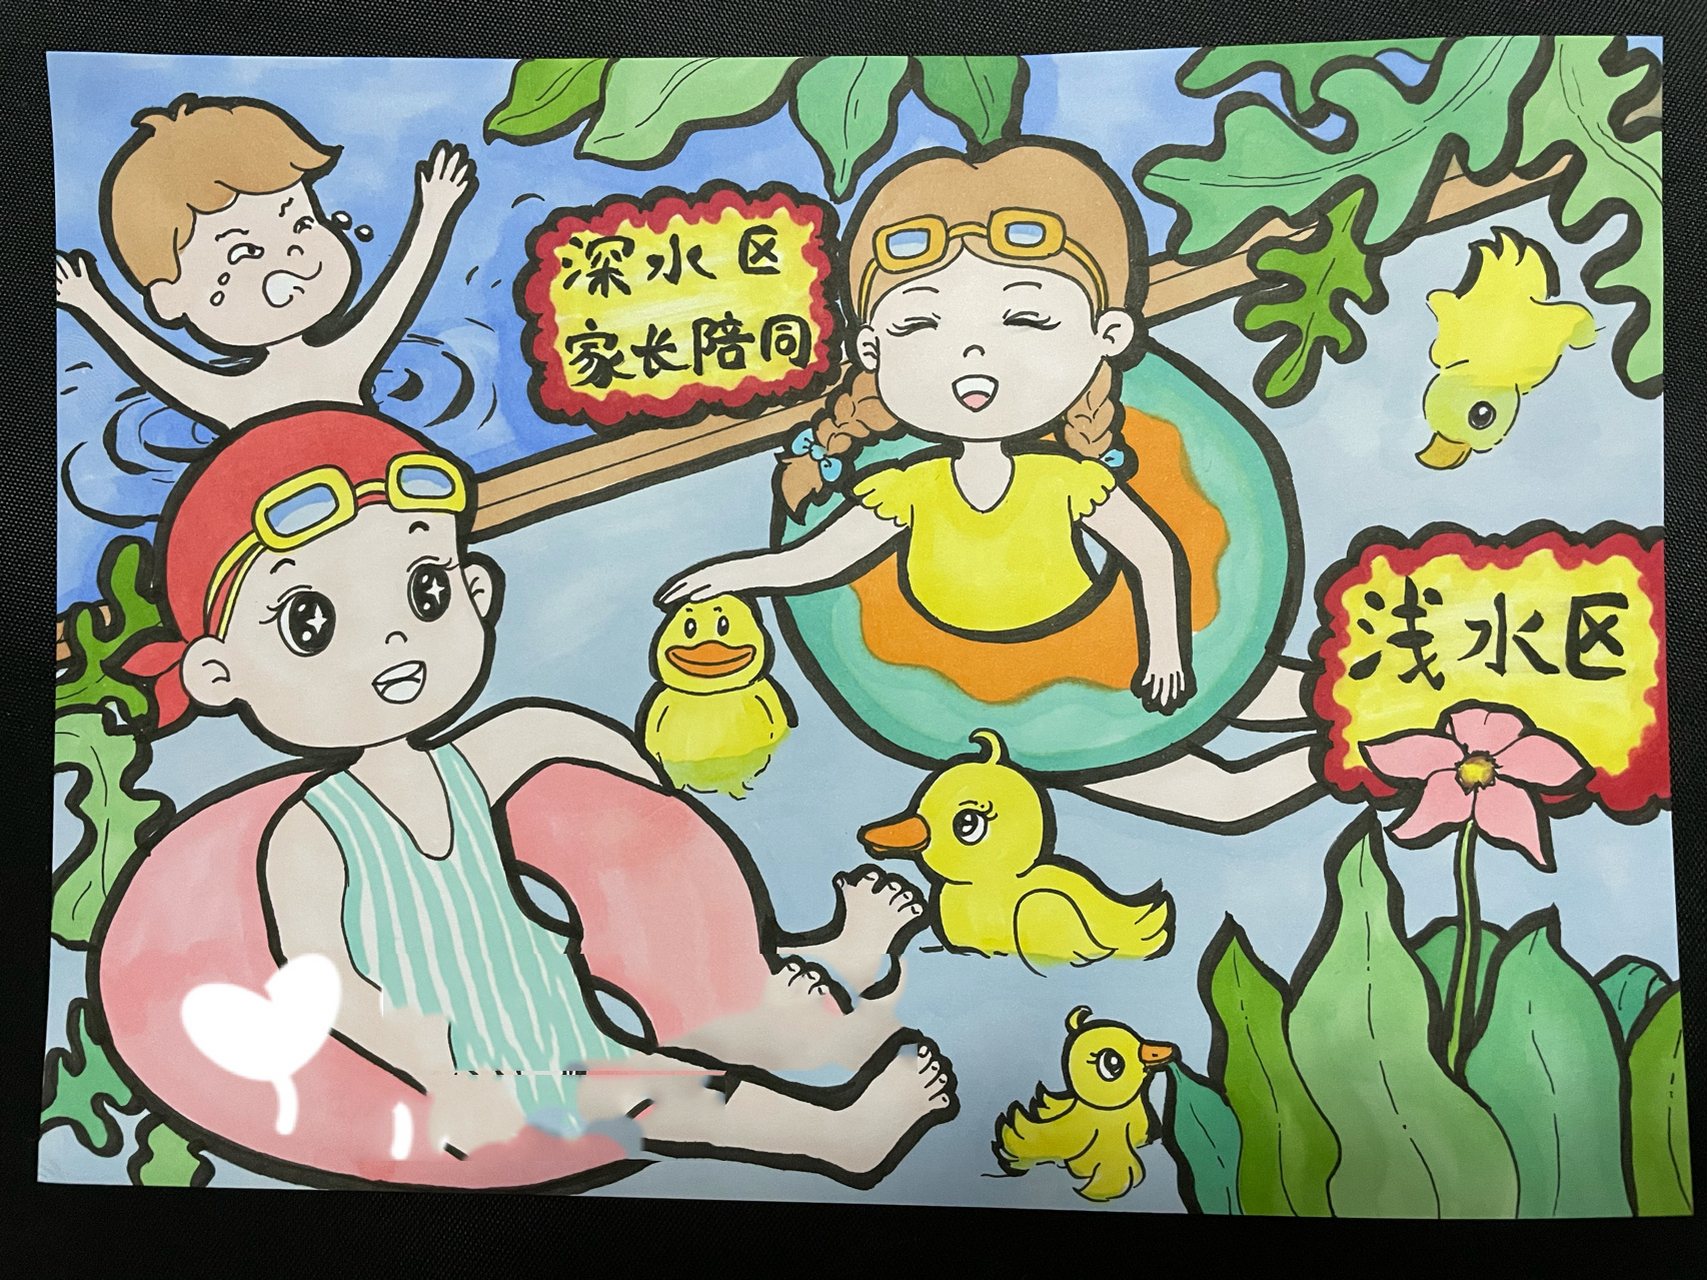 儿童画——预防溺水 夏天来了 玩水要注意安全哦 尤其是小朋友 要在